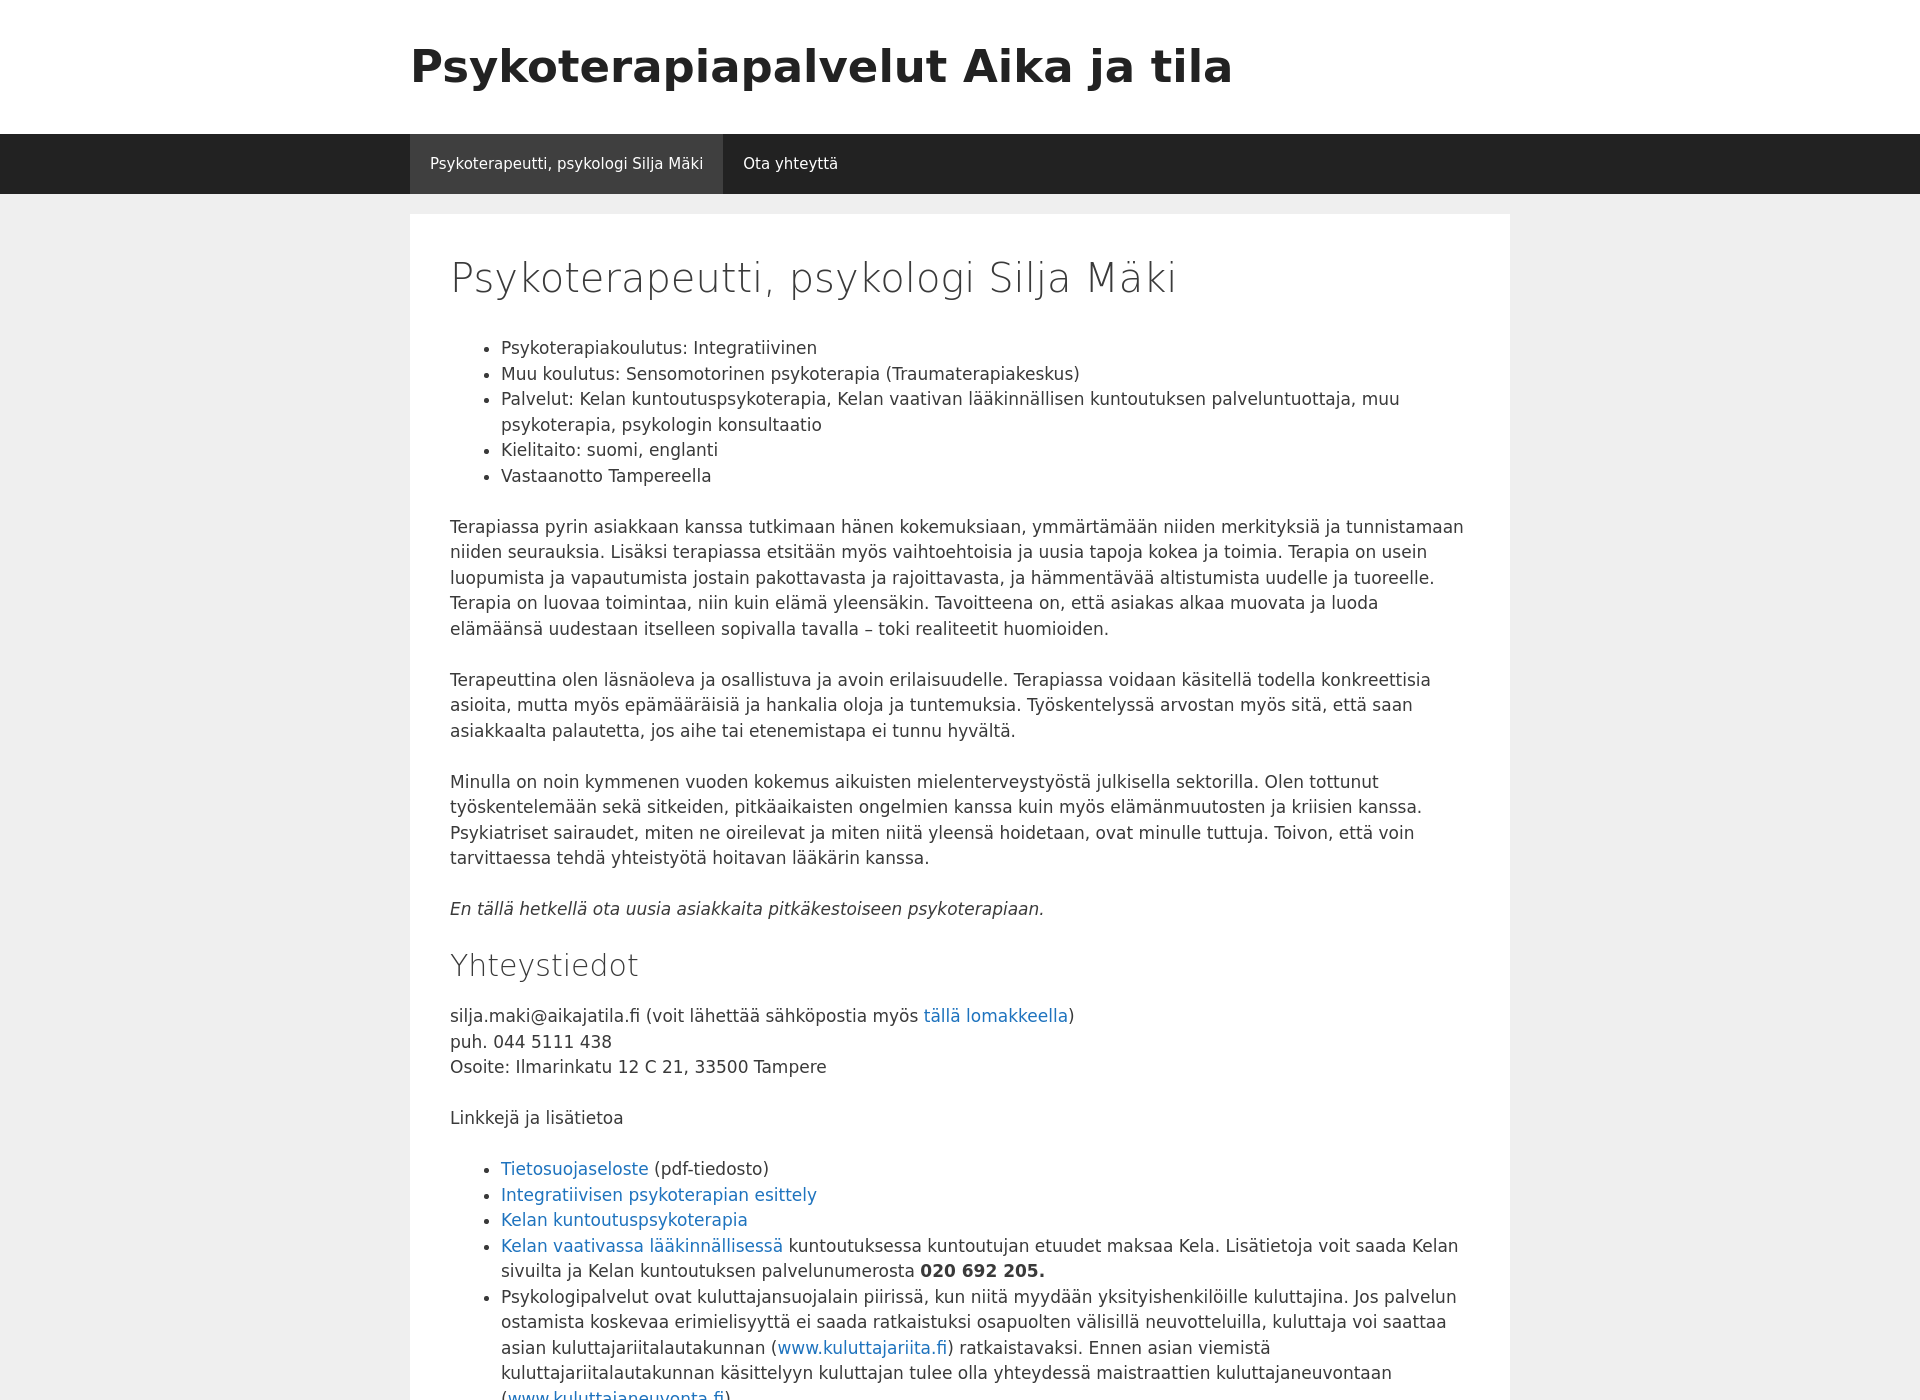 Näyttökuva aikajatila.fi